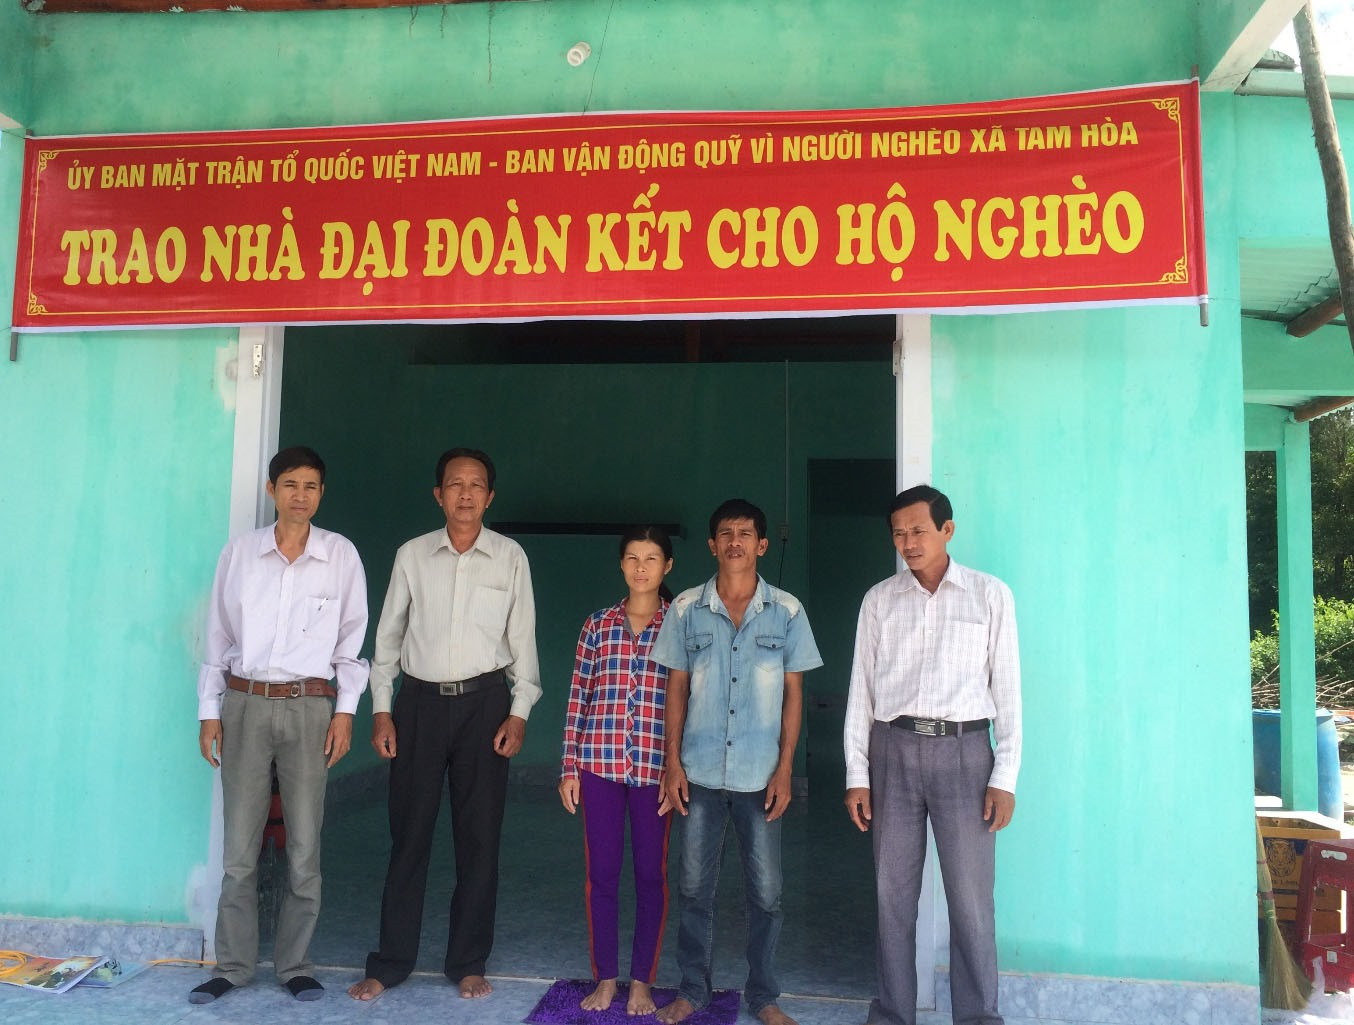 Ban vận động Quỹ vì người nghèo xã Tam Hòa trao nhà đại đoàn kết cho hộ nghèo ở thôn Phú Vinh. Ảnh: TR.MAI